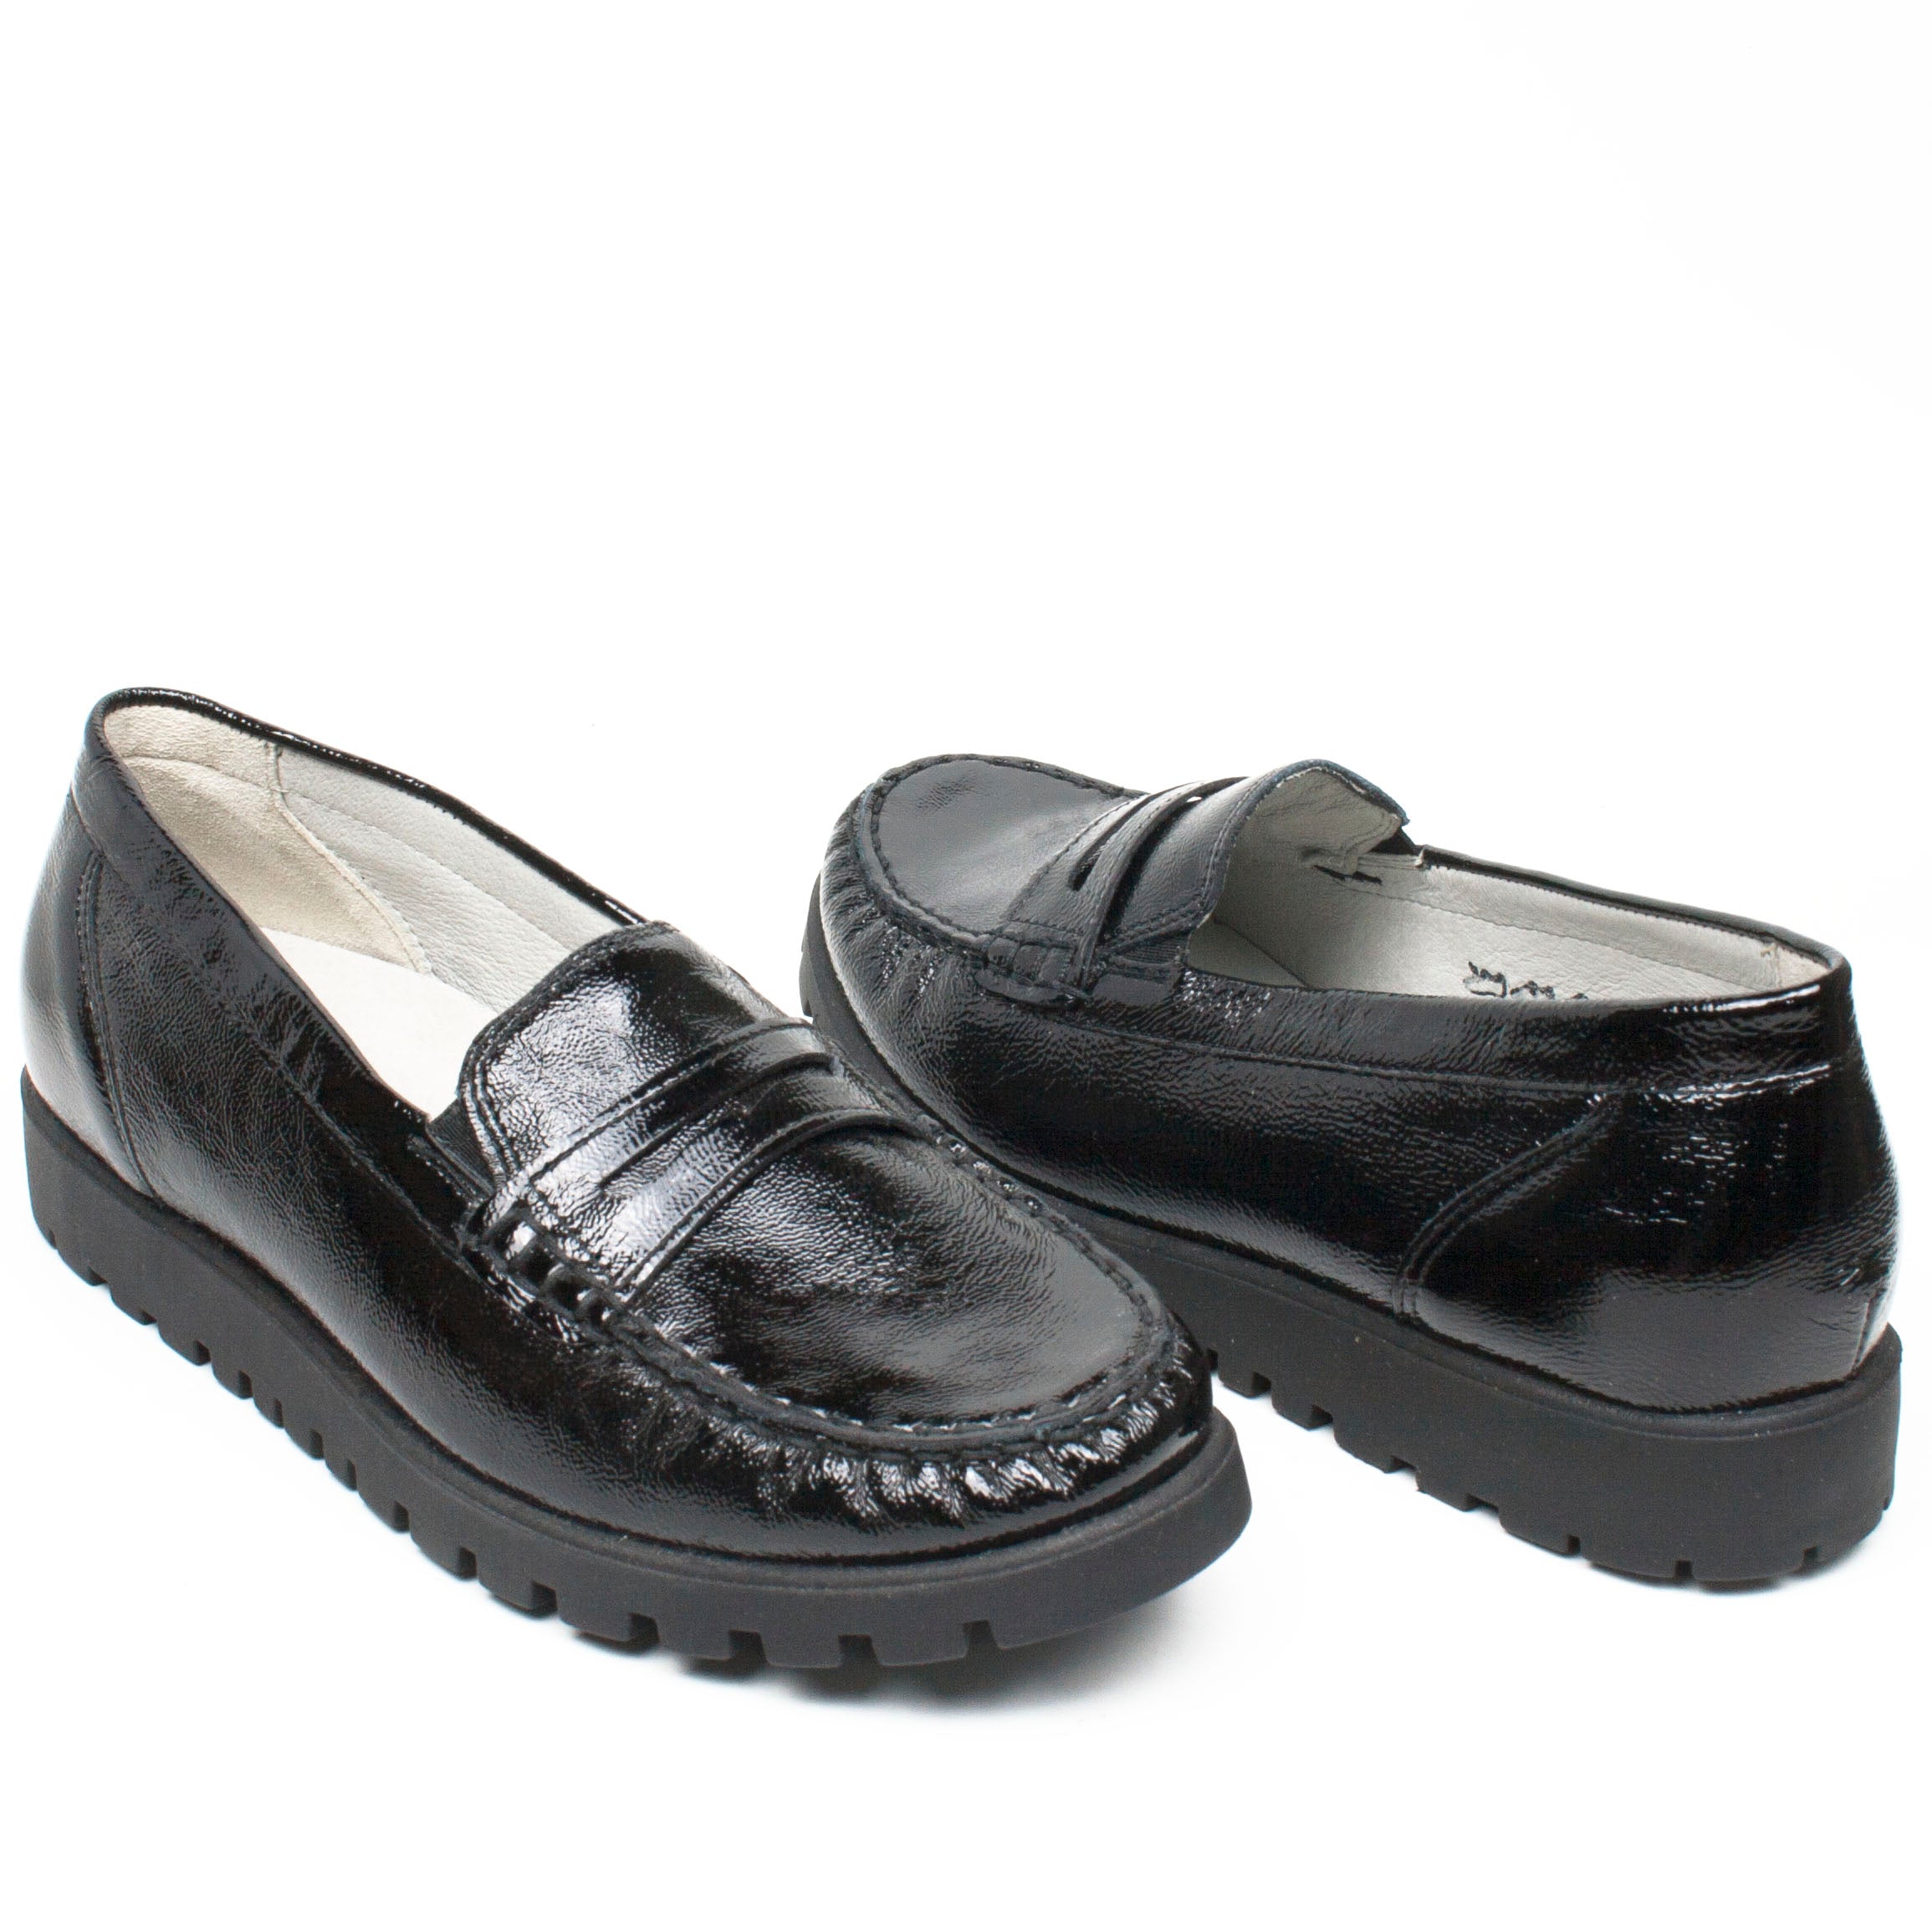 Waldlaufer pantofi dama negru ID1238-NG